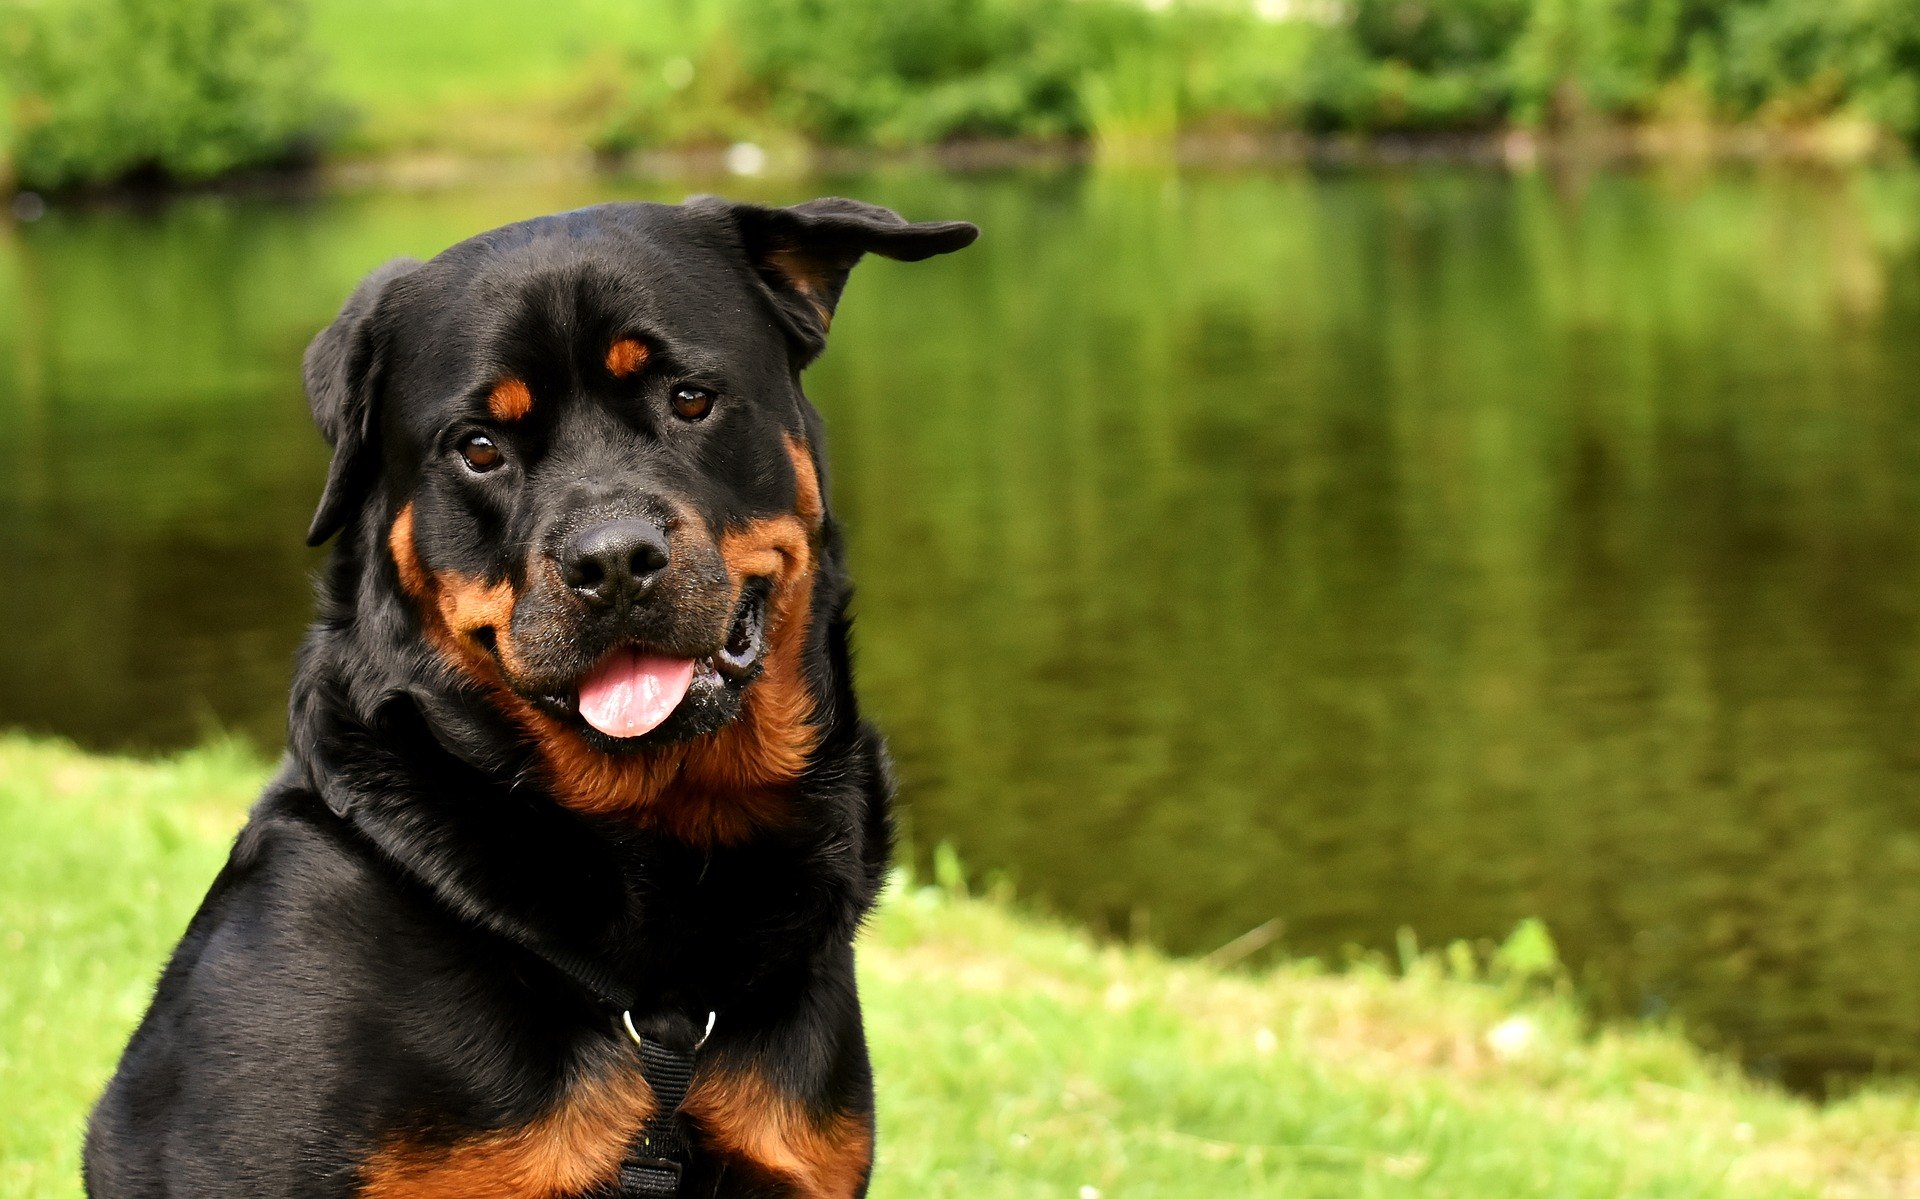 Rotvajler je velký černý pes s rezavými znaky. Plemeno psa, u kterého je zvlášť důležitý výcvik, aby pes byl poslušný a nebyl agresivní.